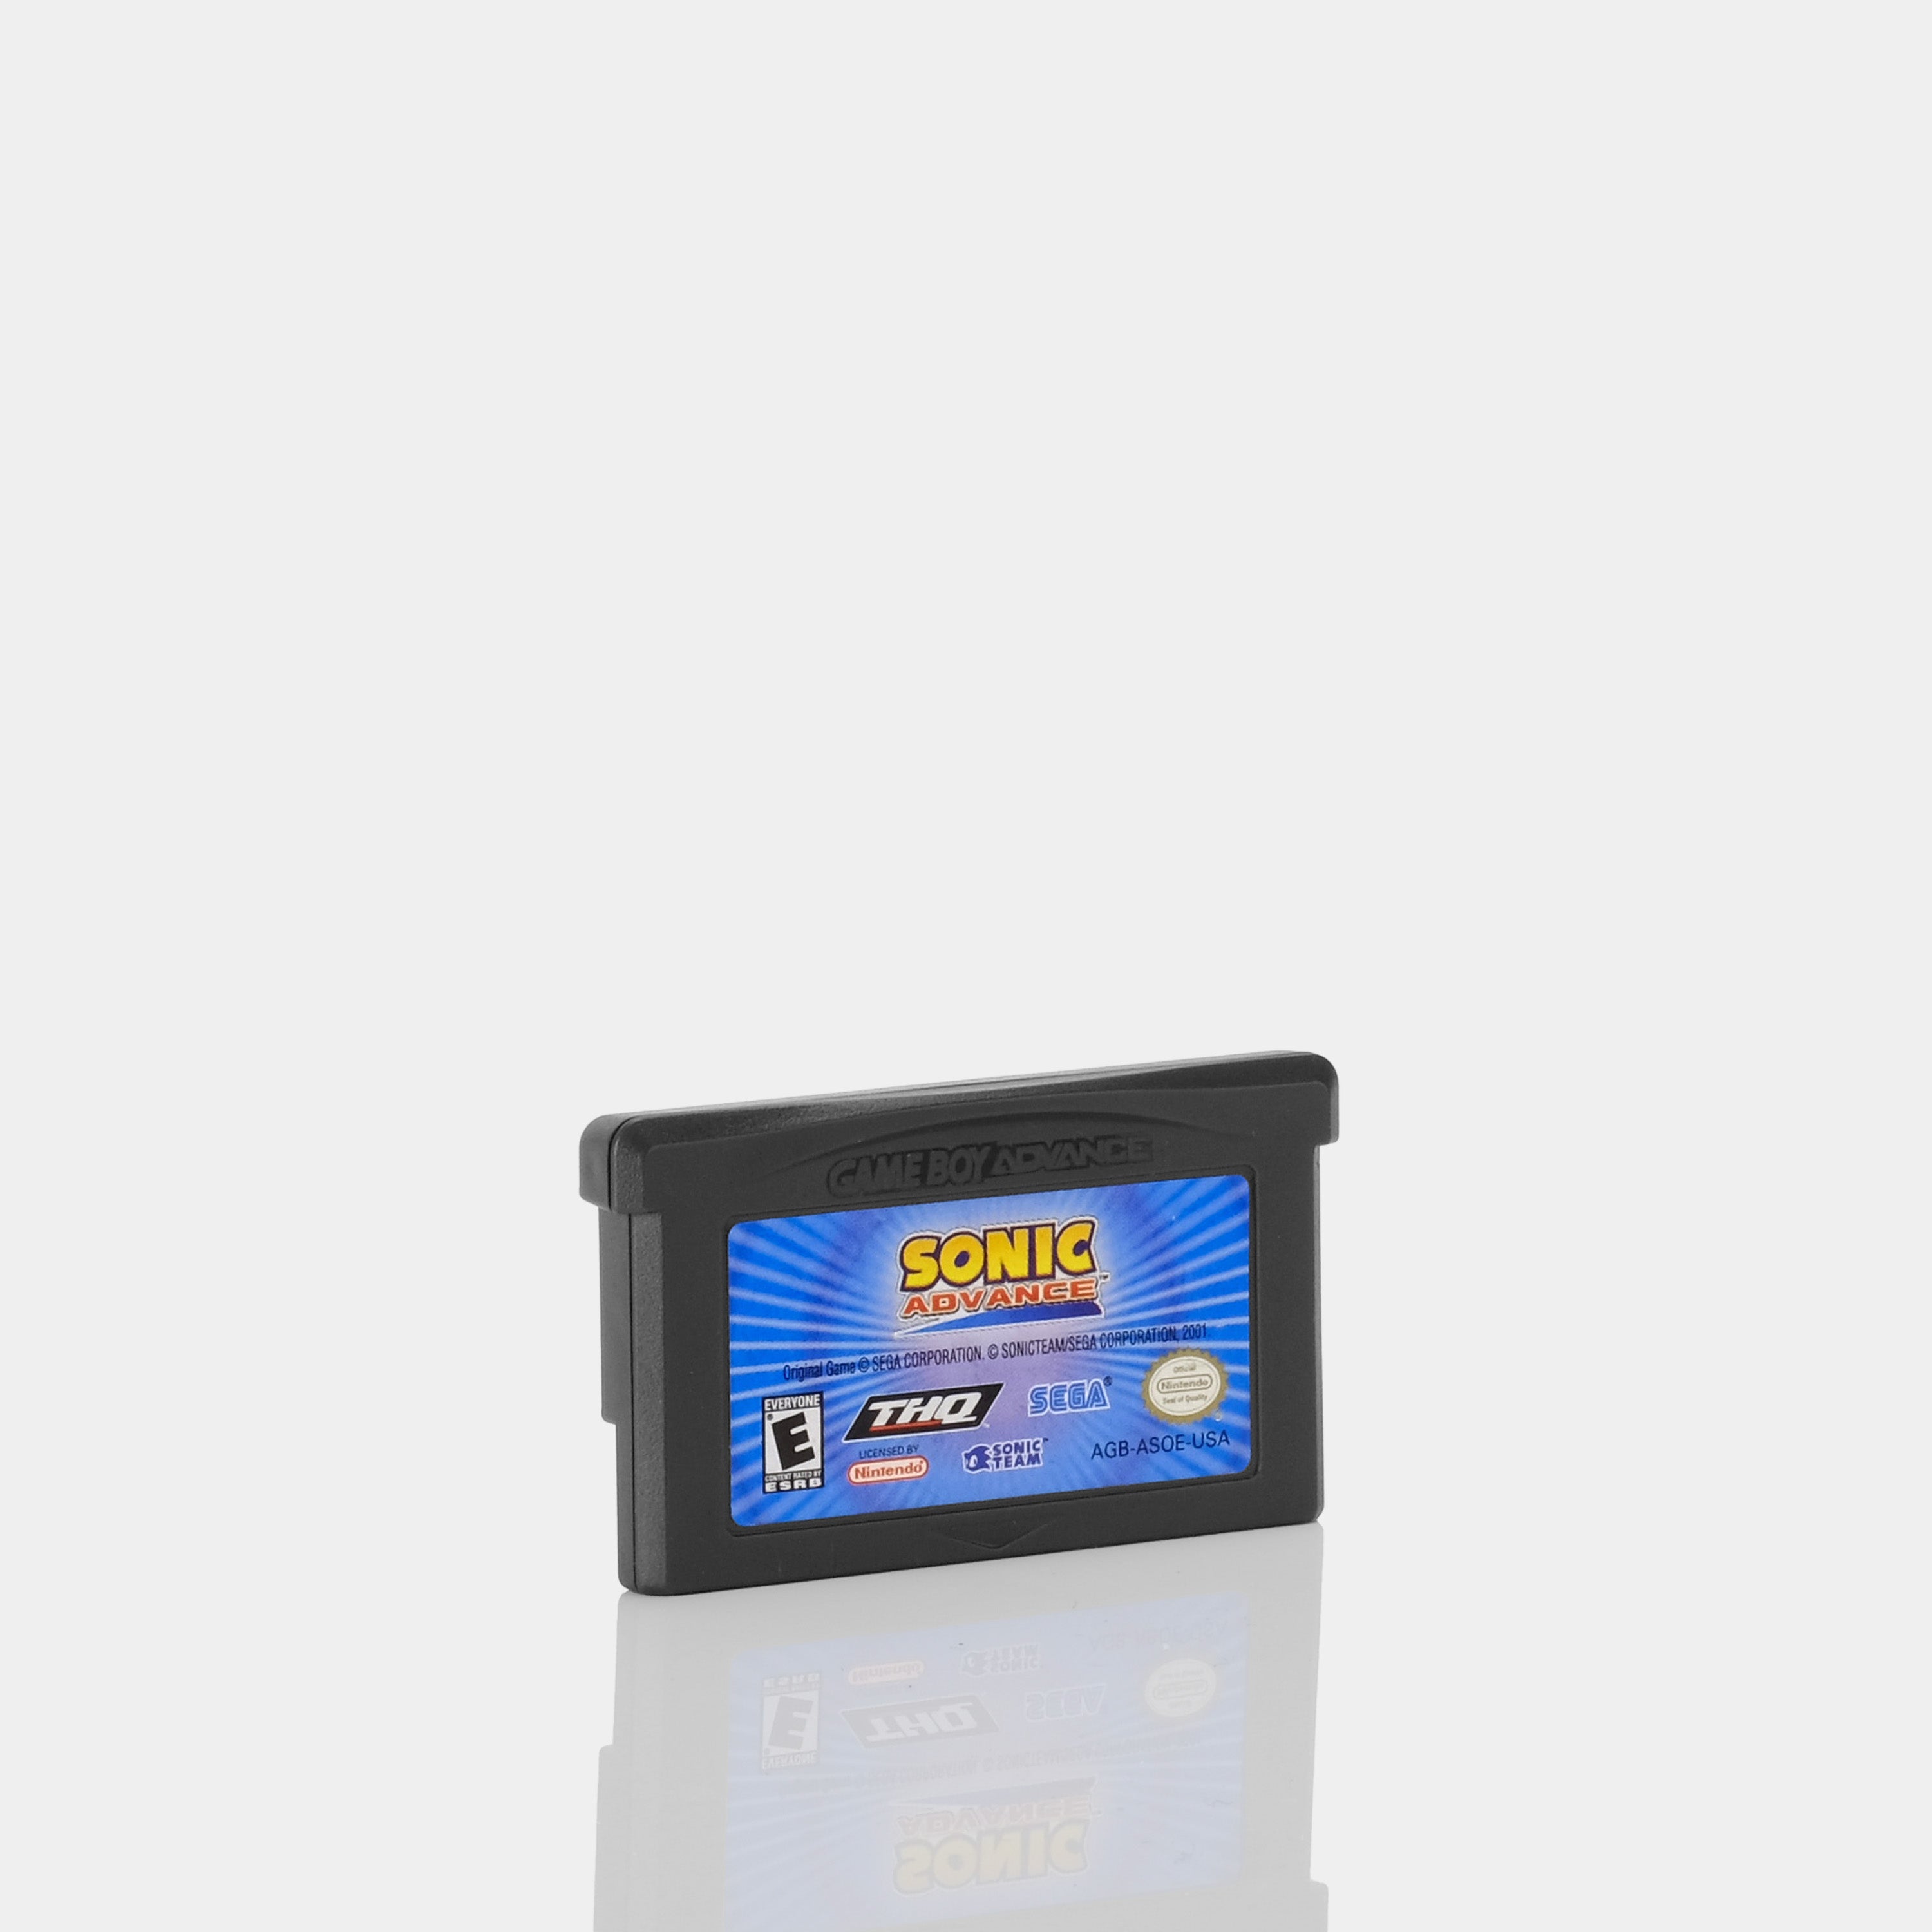 Sonic Advance Game Boy Advance Game